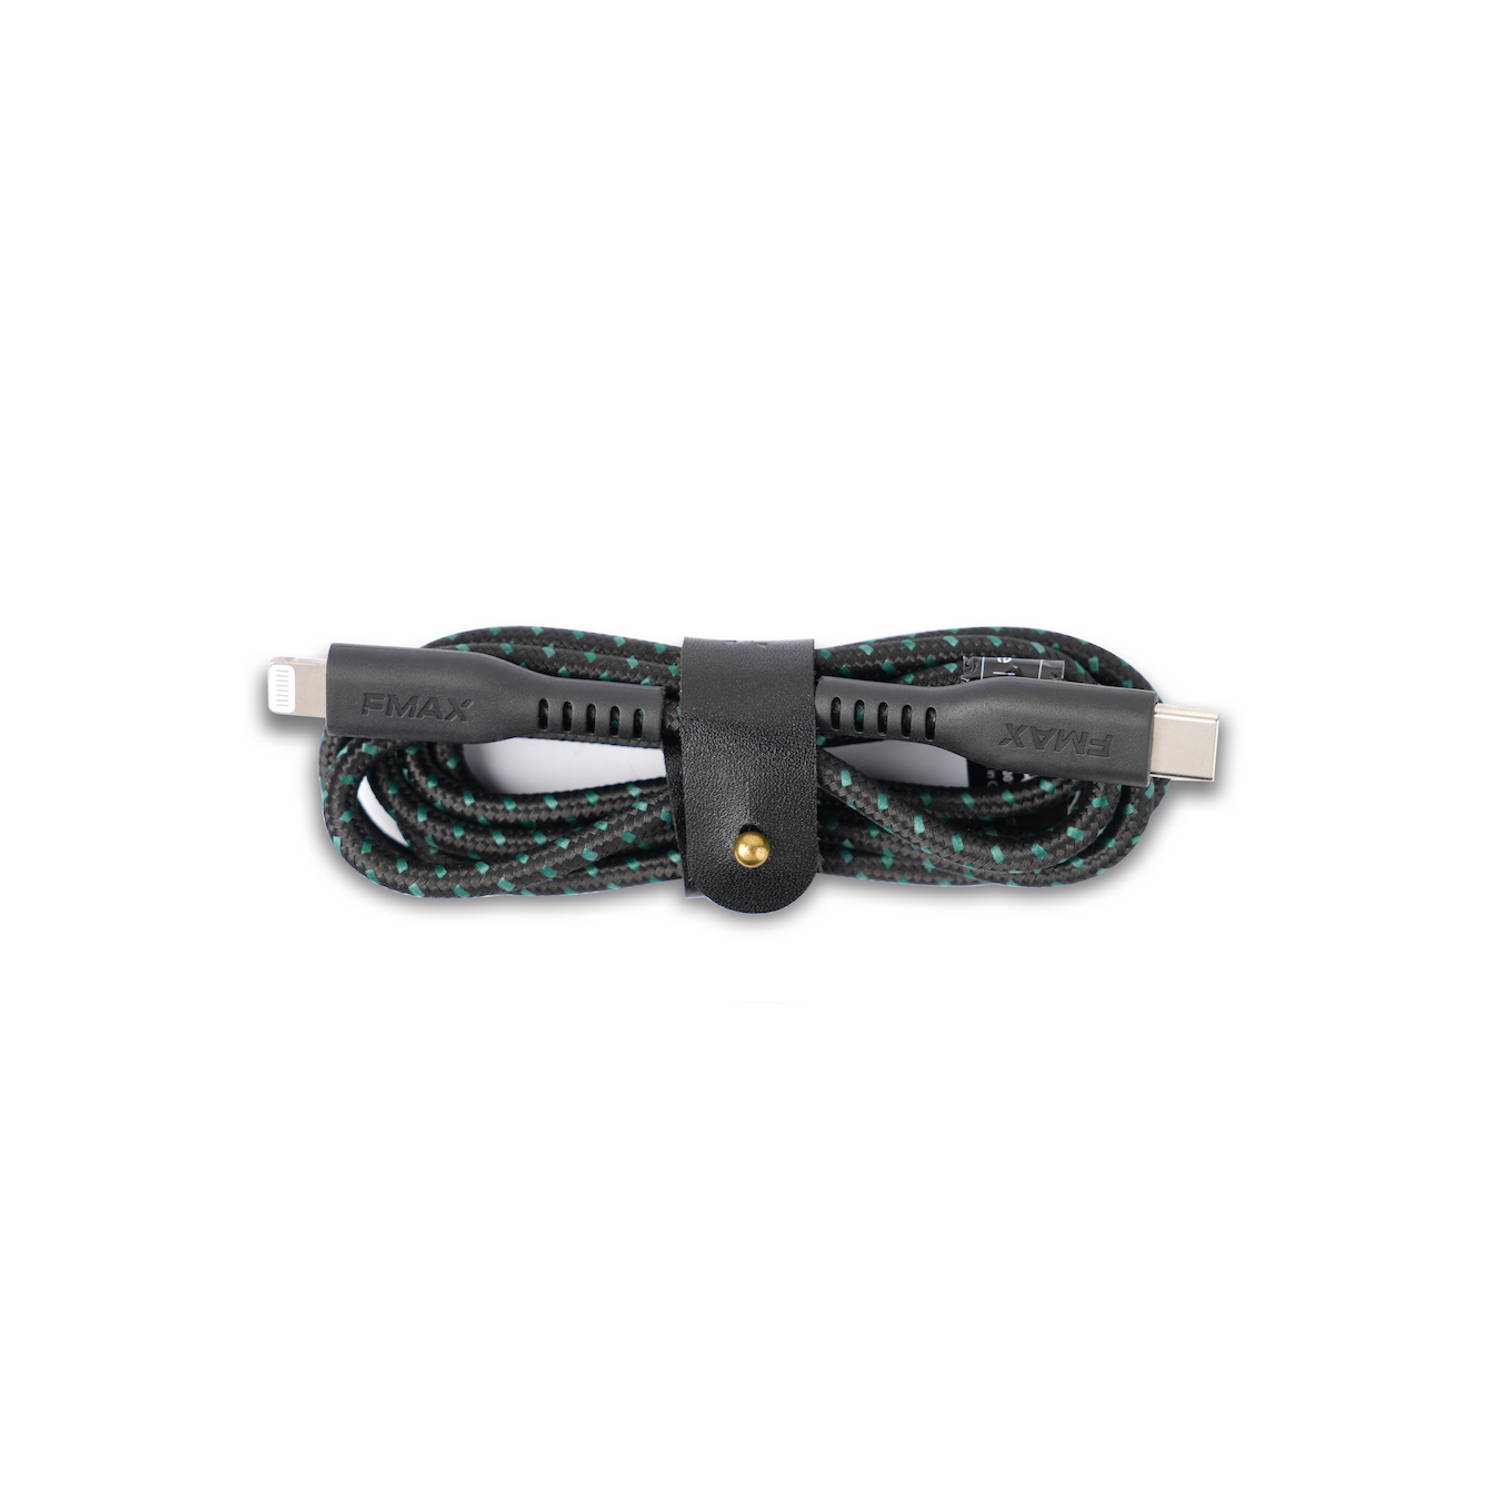 FMAX - Oplaadkabel - Type-C Lightning USB kabel - 1.2 meter - MFI gecertificeerd